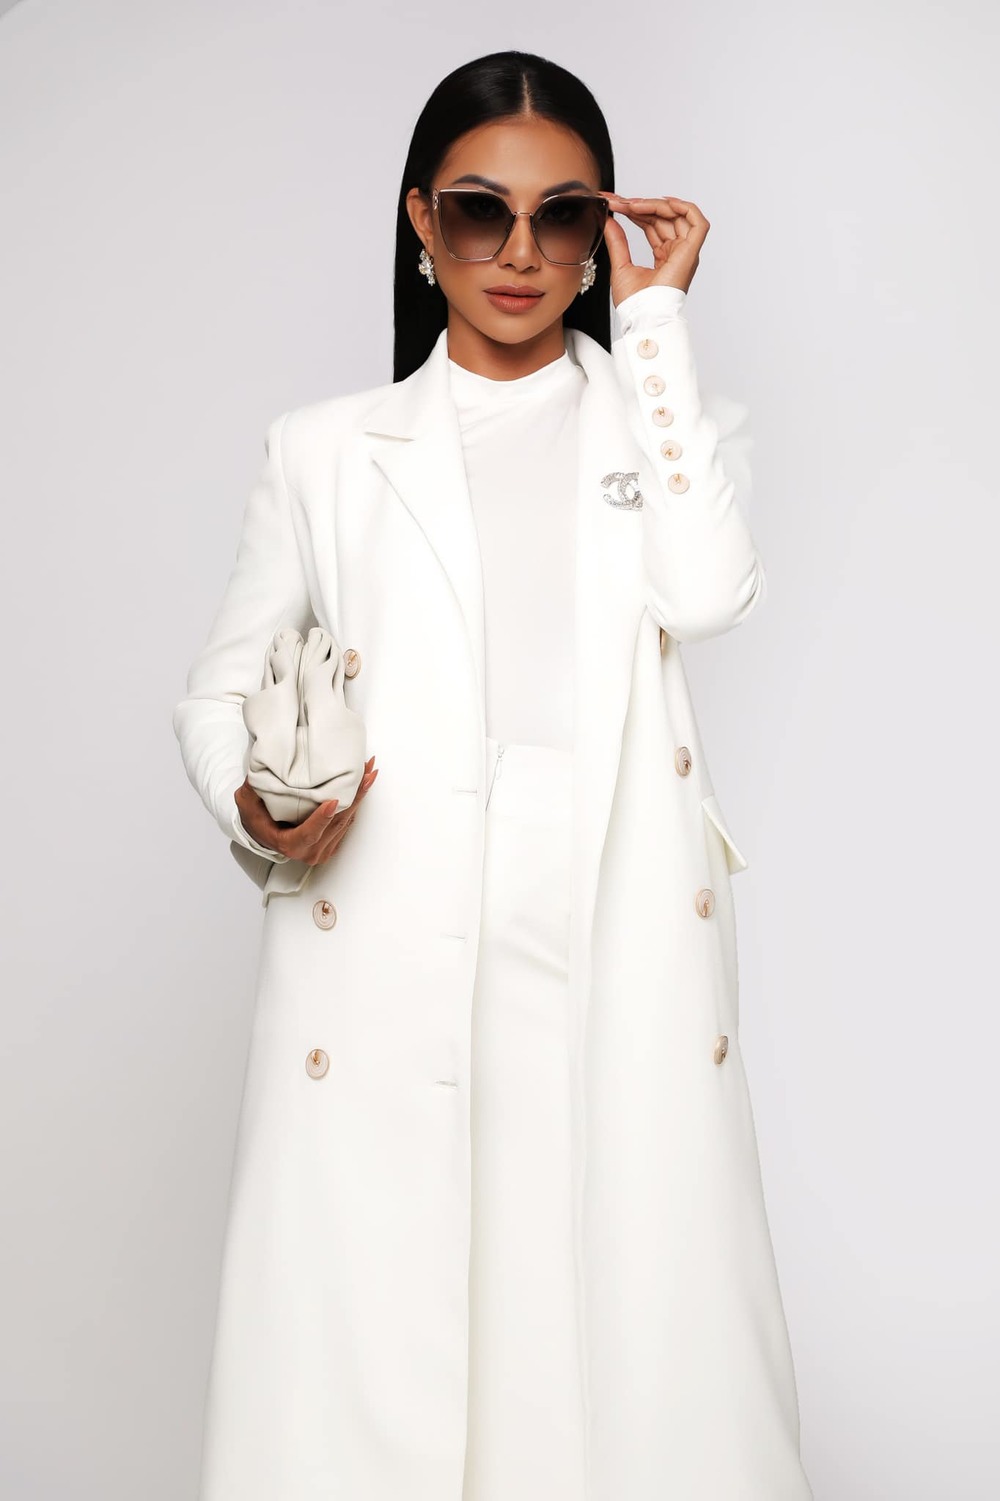 Khoe ảnh áo tắm trước thềm Bán kết, Kim Duyên được Missosology dự đoán lọt Top 12 Miss Universe - Ảnh 10